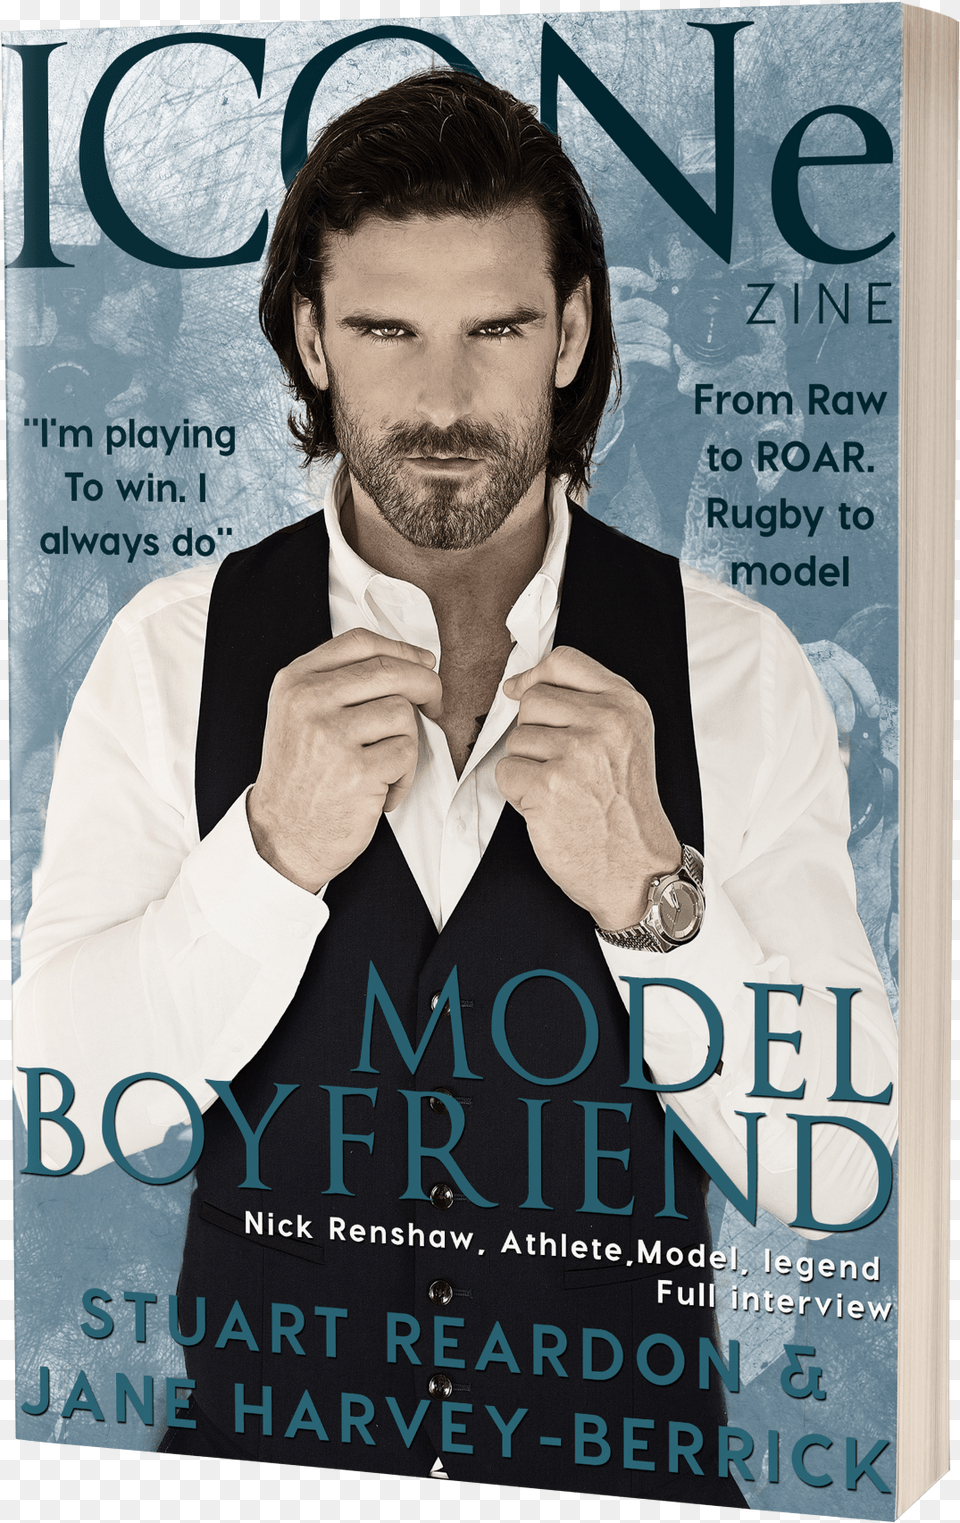 Buy Online Model Boyfriend, Adult, Publication, Person, Man Png Image